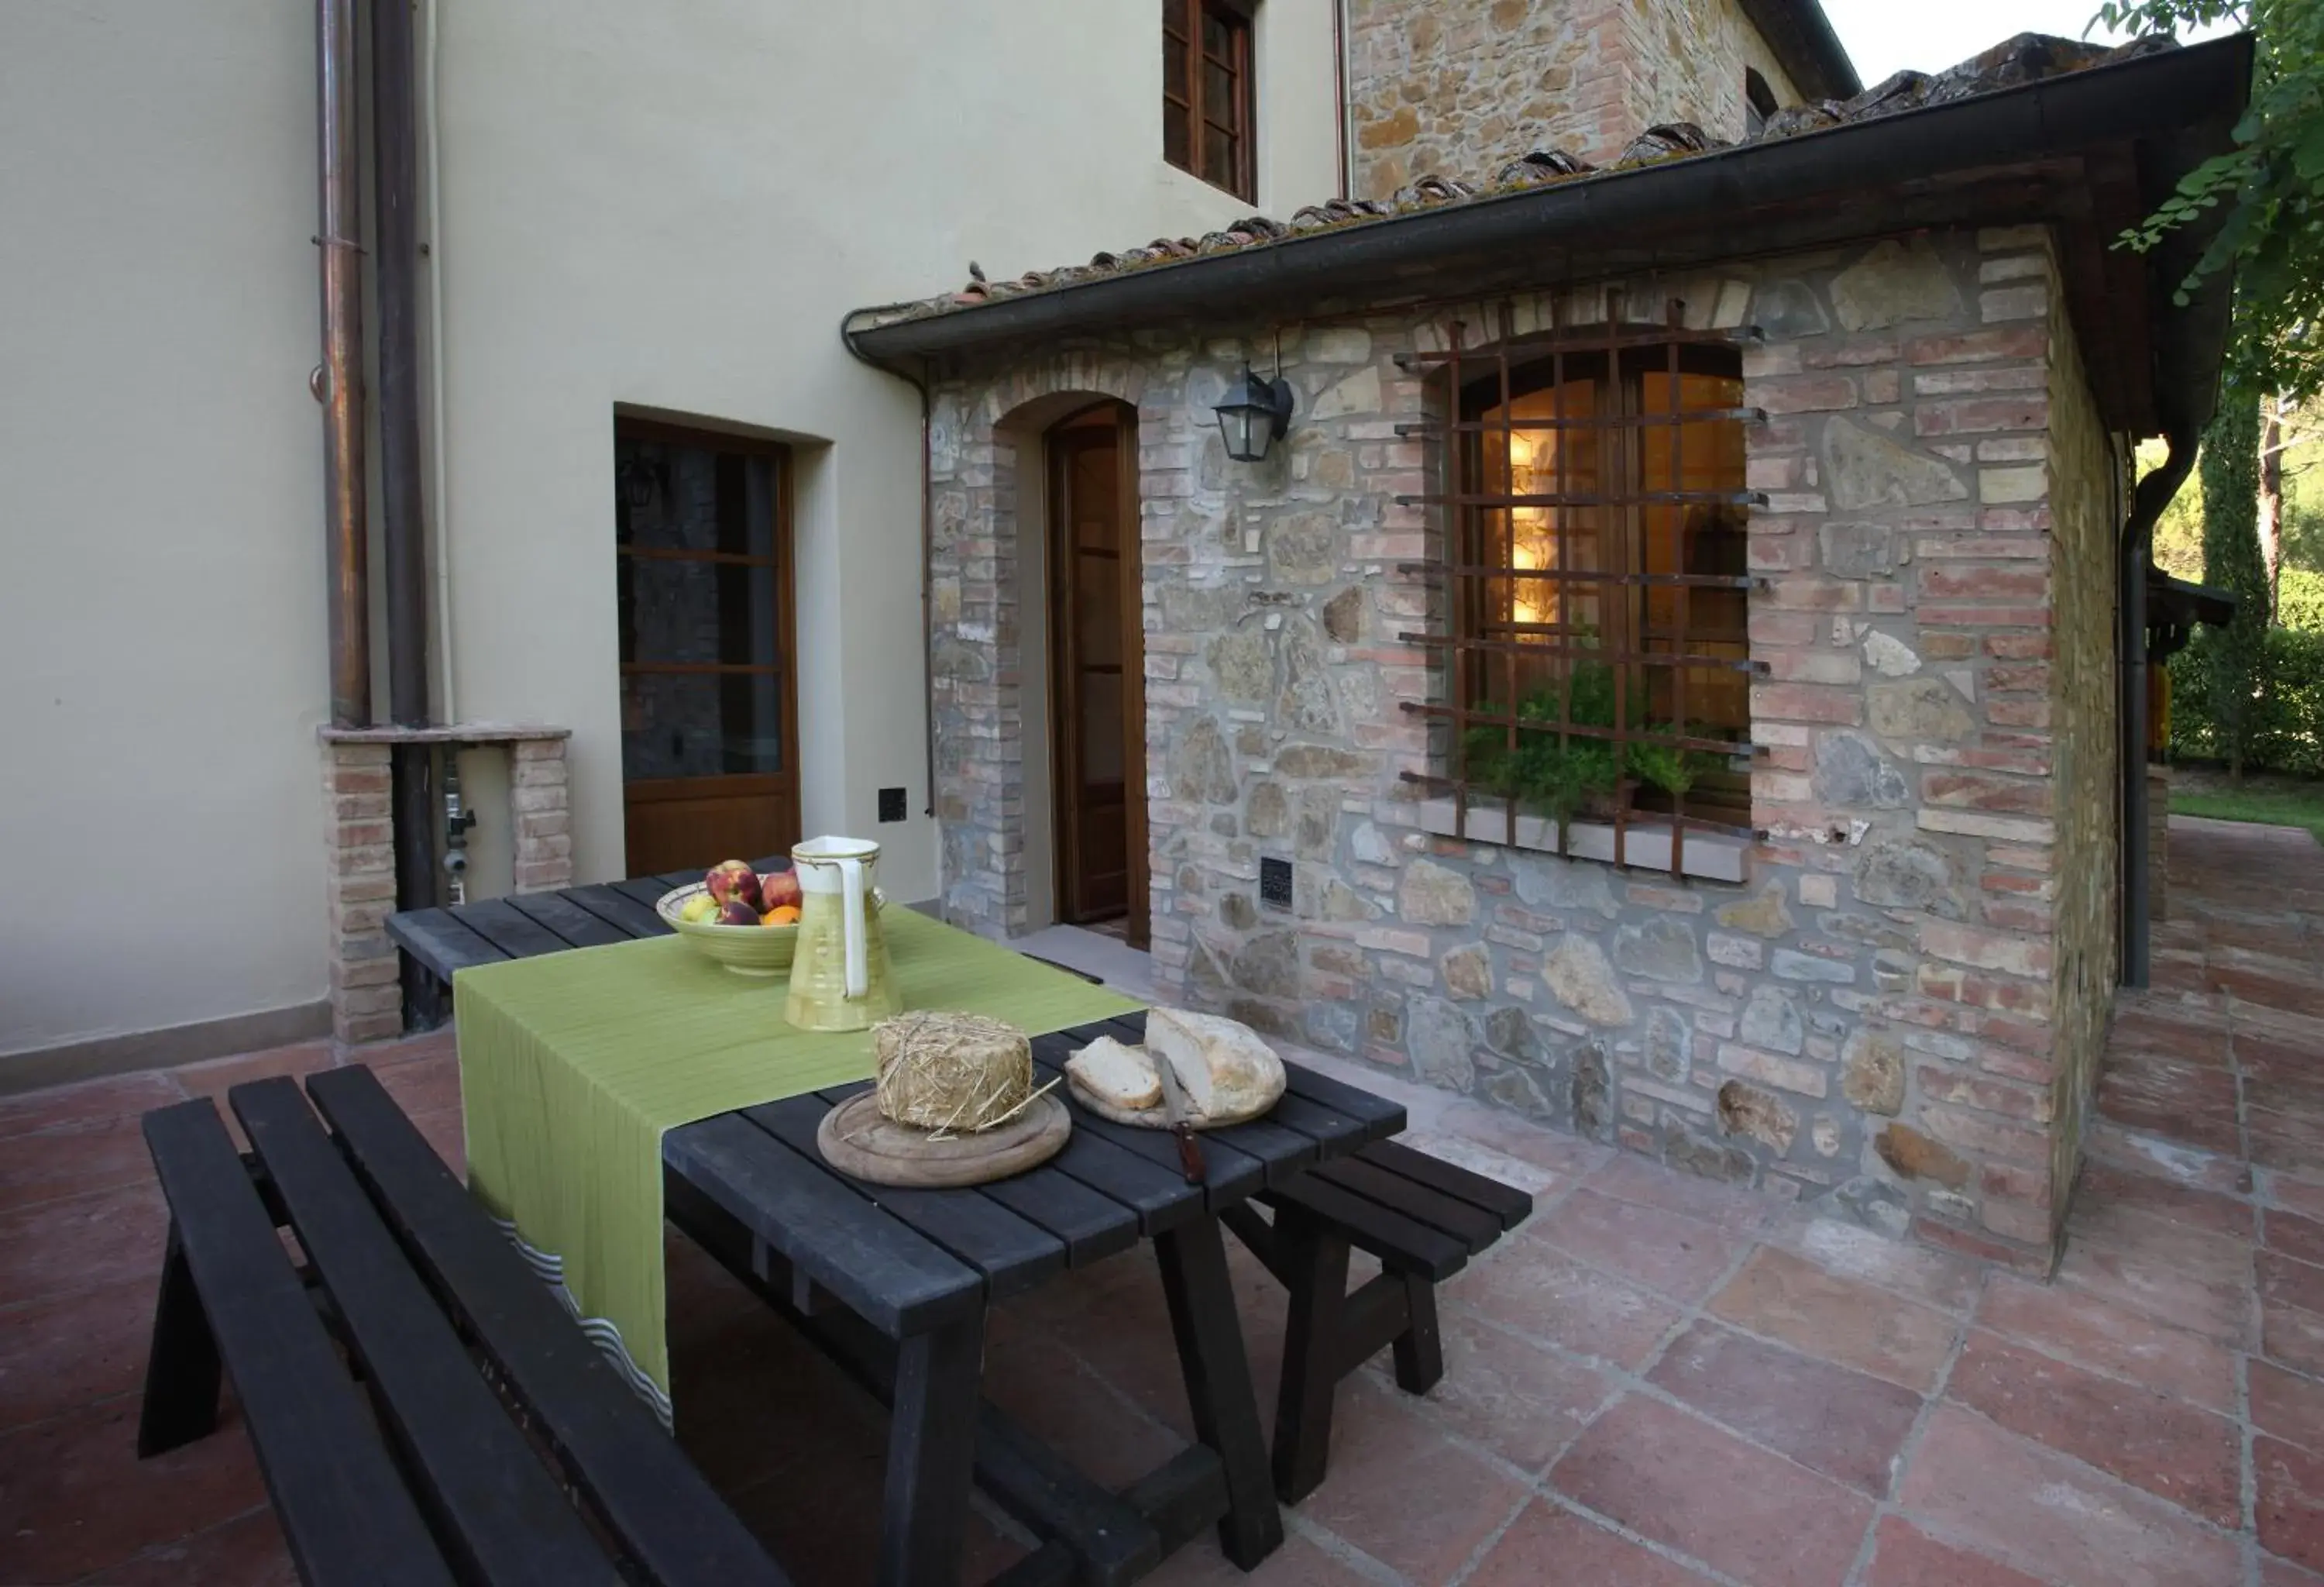 Dining area in Borgo San Benedetto